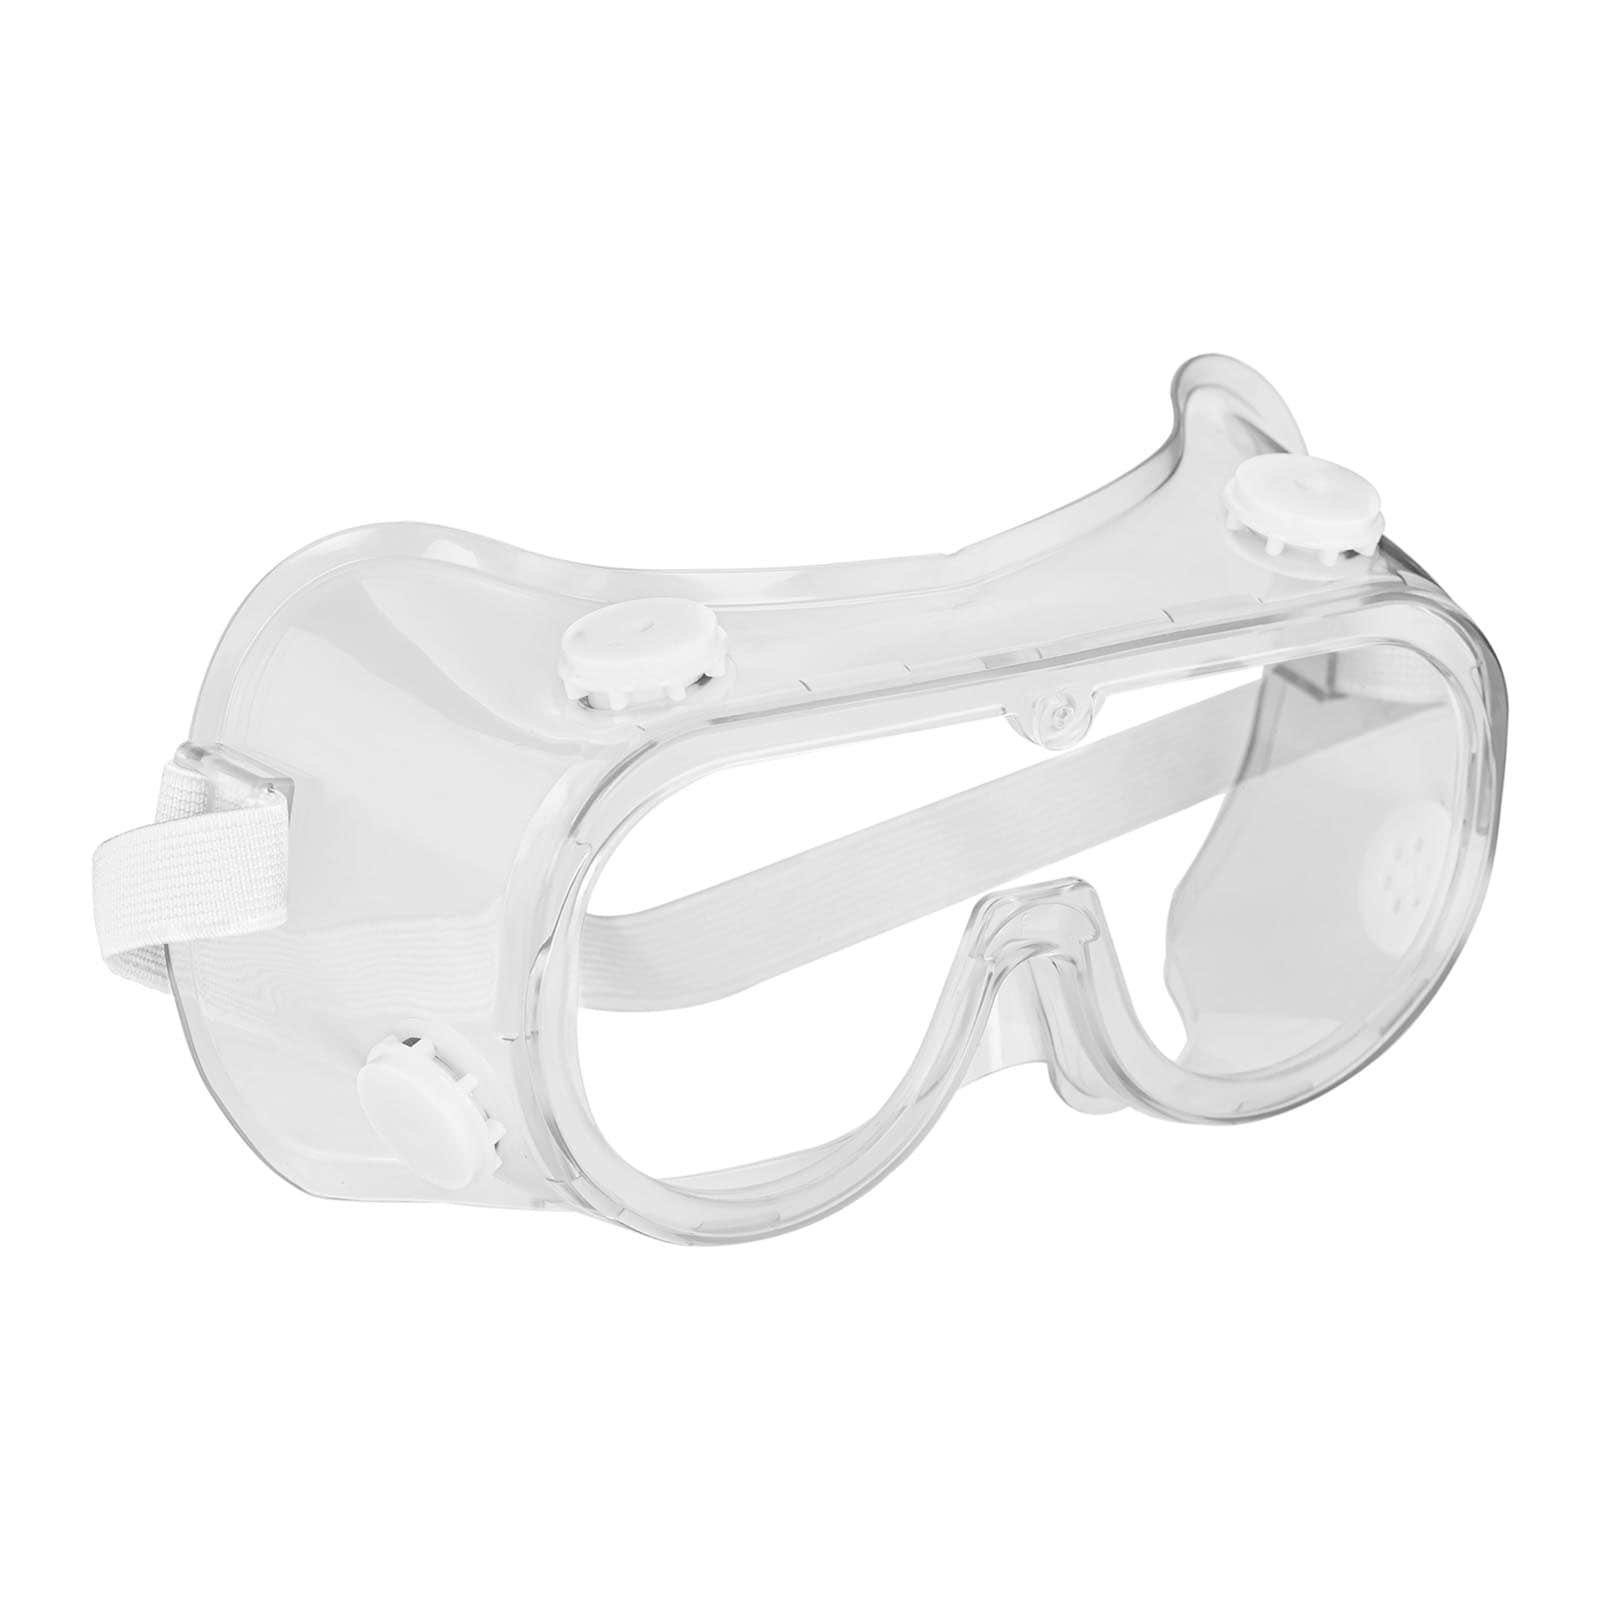 MSW Arbeitsschutzbrille 3x kratzfest Laborbrille beschlagfrei | Schutzbrillen